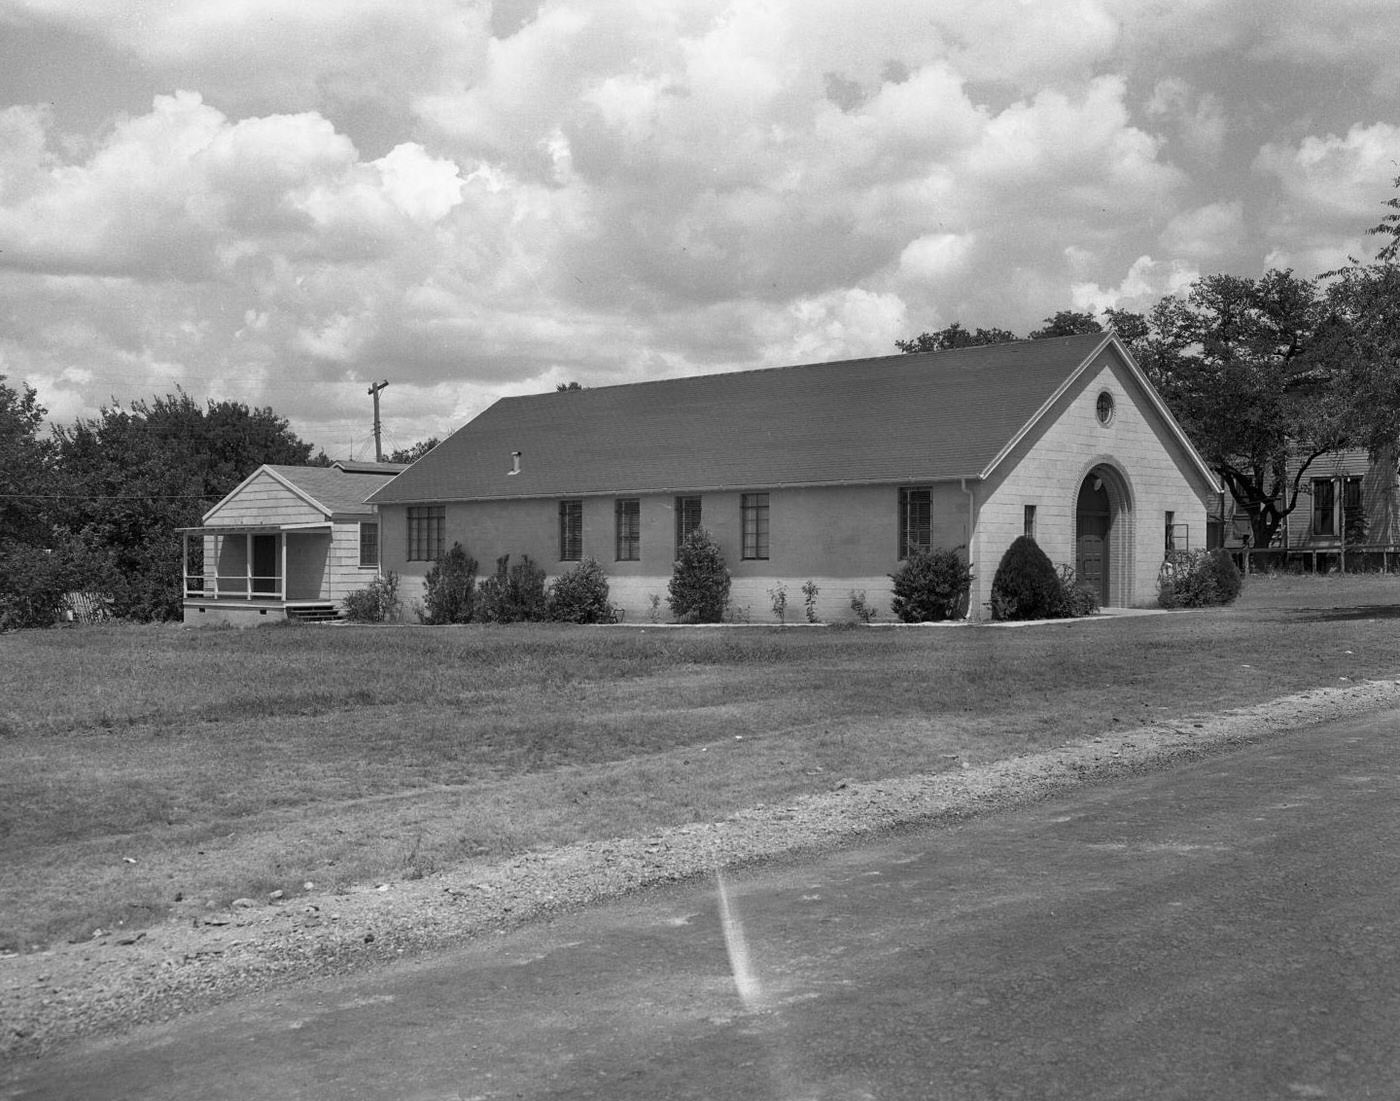 South Austin Christian Church, Exterior View, 1950.